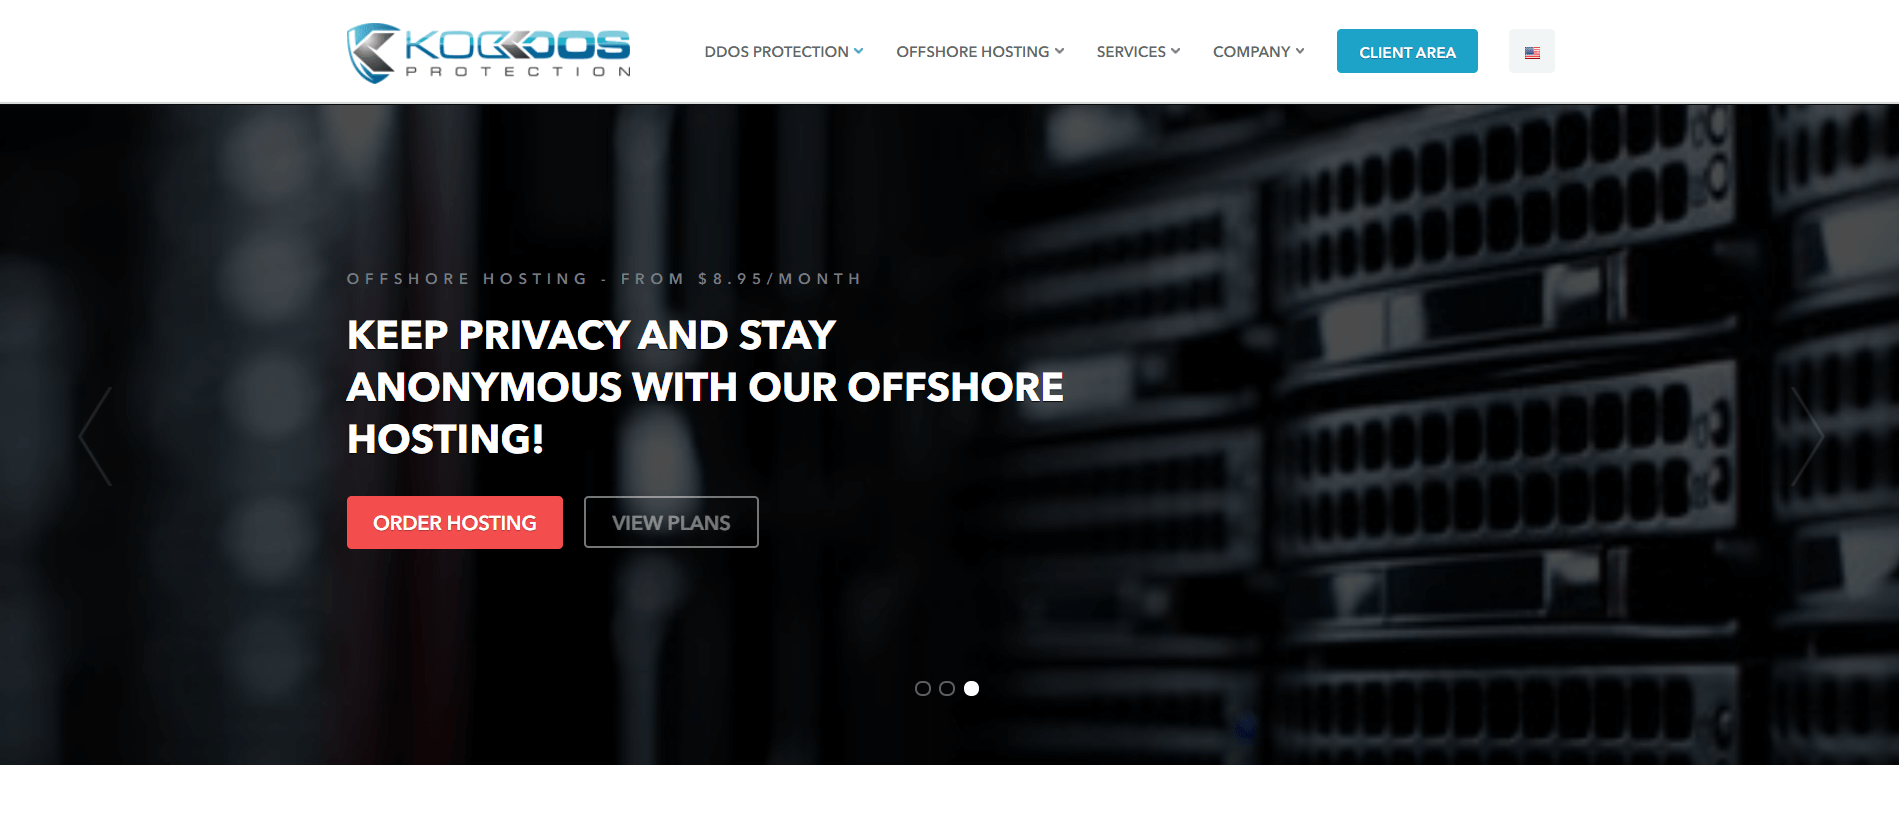 Koddos 的主页，一个专注于安全性的离岸网络托管选项。